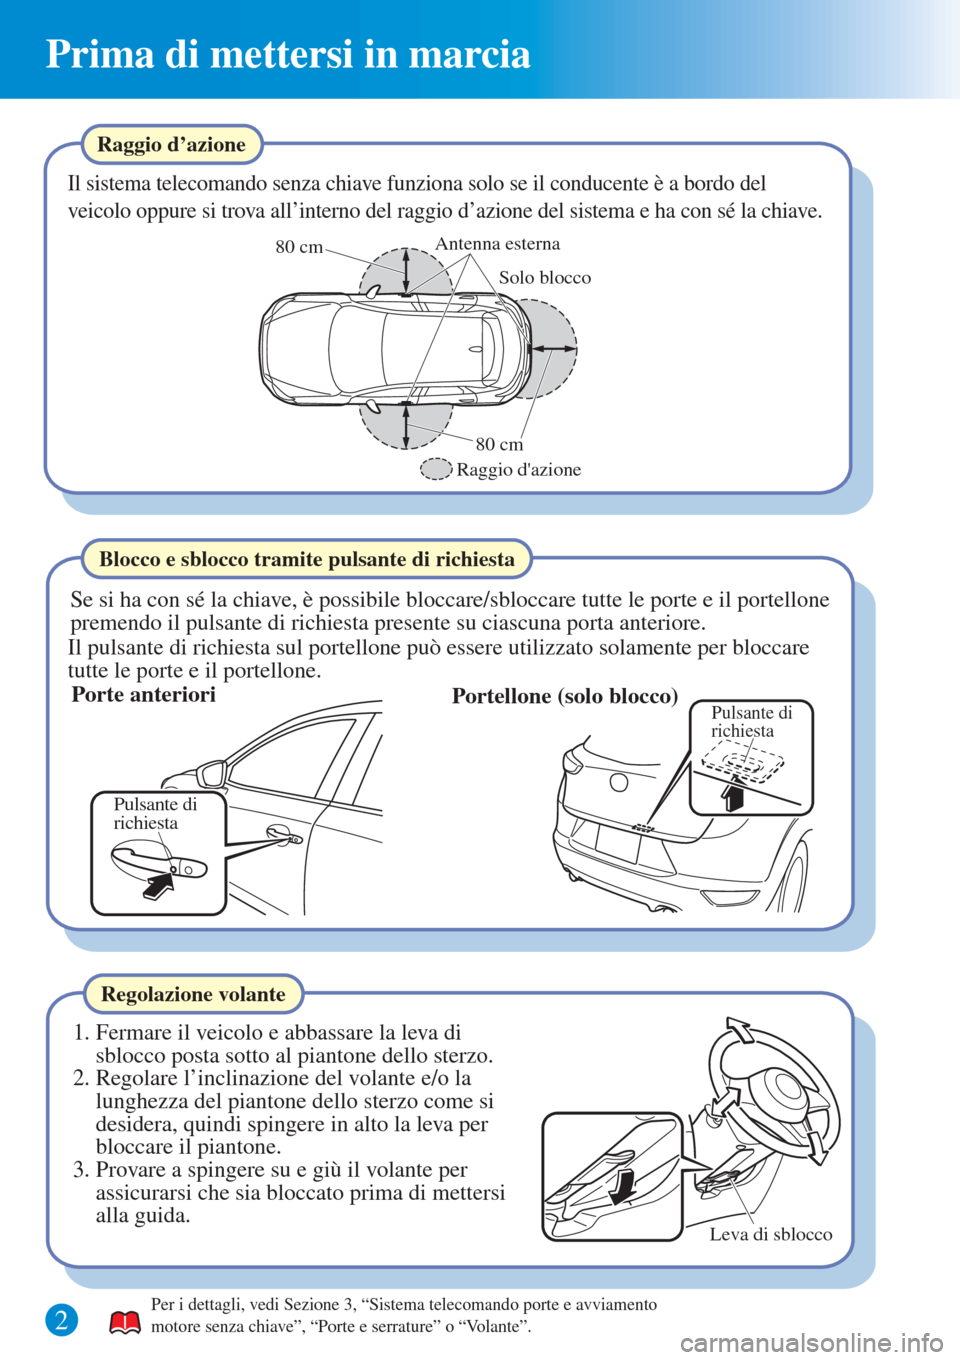 MAZDA MODEL CX-3 2015  Guida Rapida (in Italian) Prima di mettersi in marcia
Raggio d’azione
Il sistema telecomando senza chiave funziona solo se il conducente è a bordo del 
veicolo oppure si trova all’interno del raggio d’azione del sistema